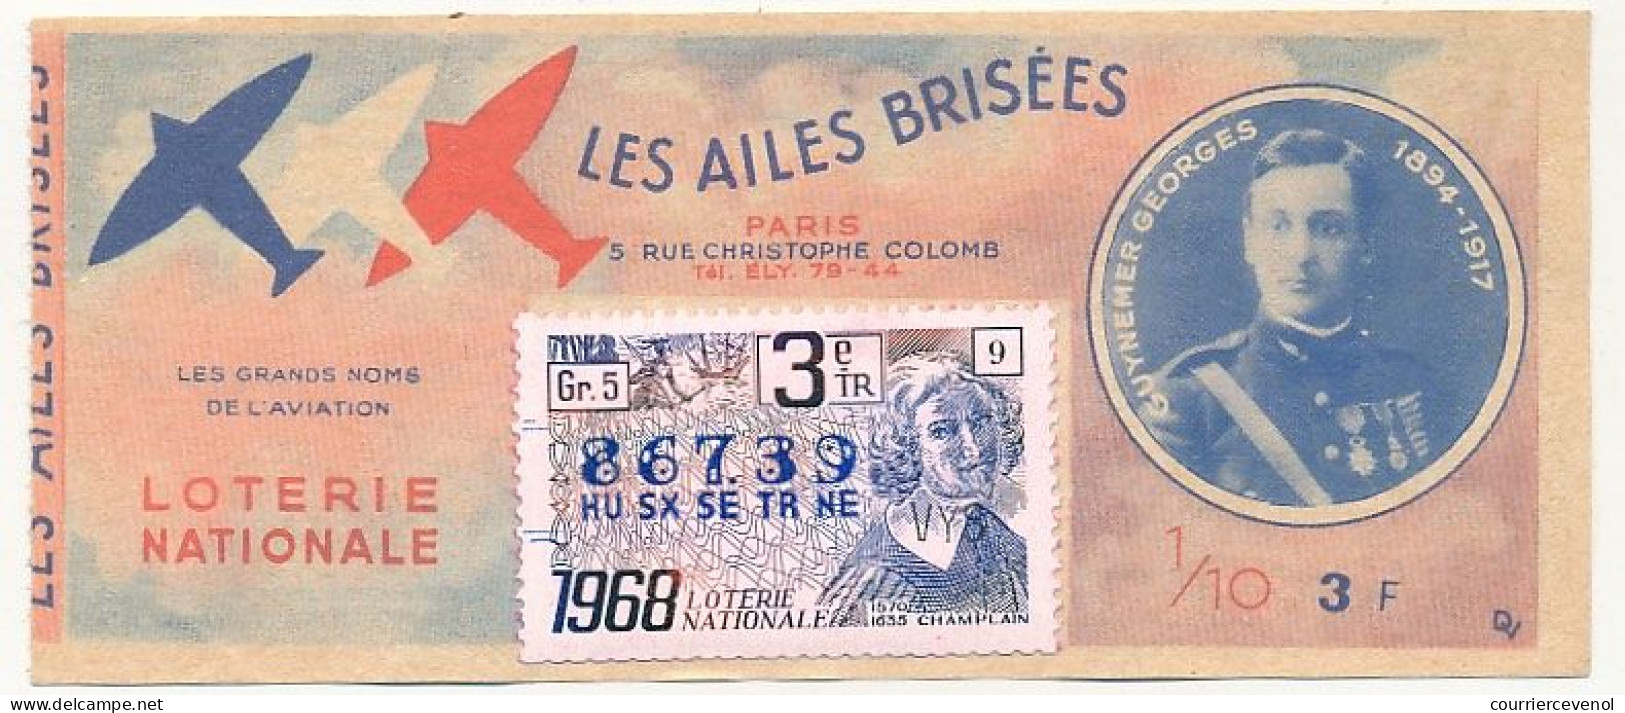 FRANCE - Loterie Nationale - 1/10ème - Les Ailes Brisées - Grands Noms De L'Aviation - Guynemer Georges - 3èm Tr 1968 - Lotterielose